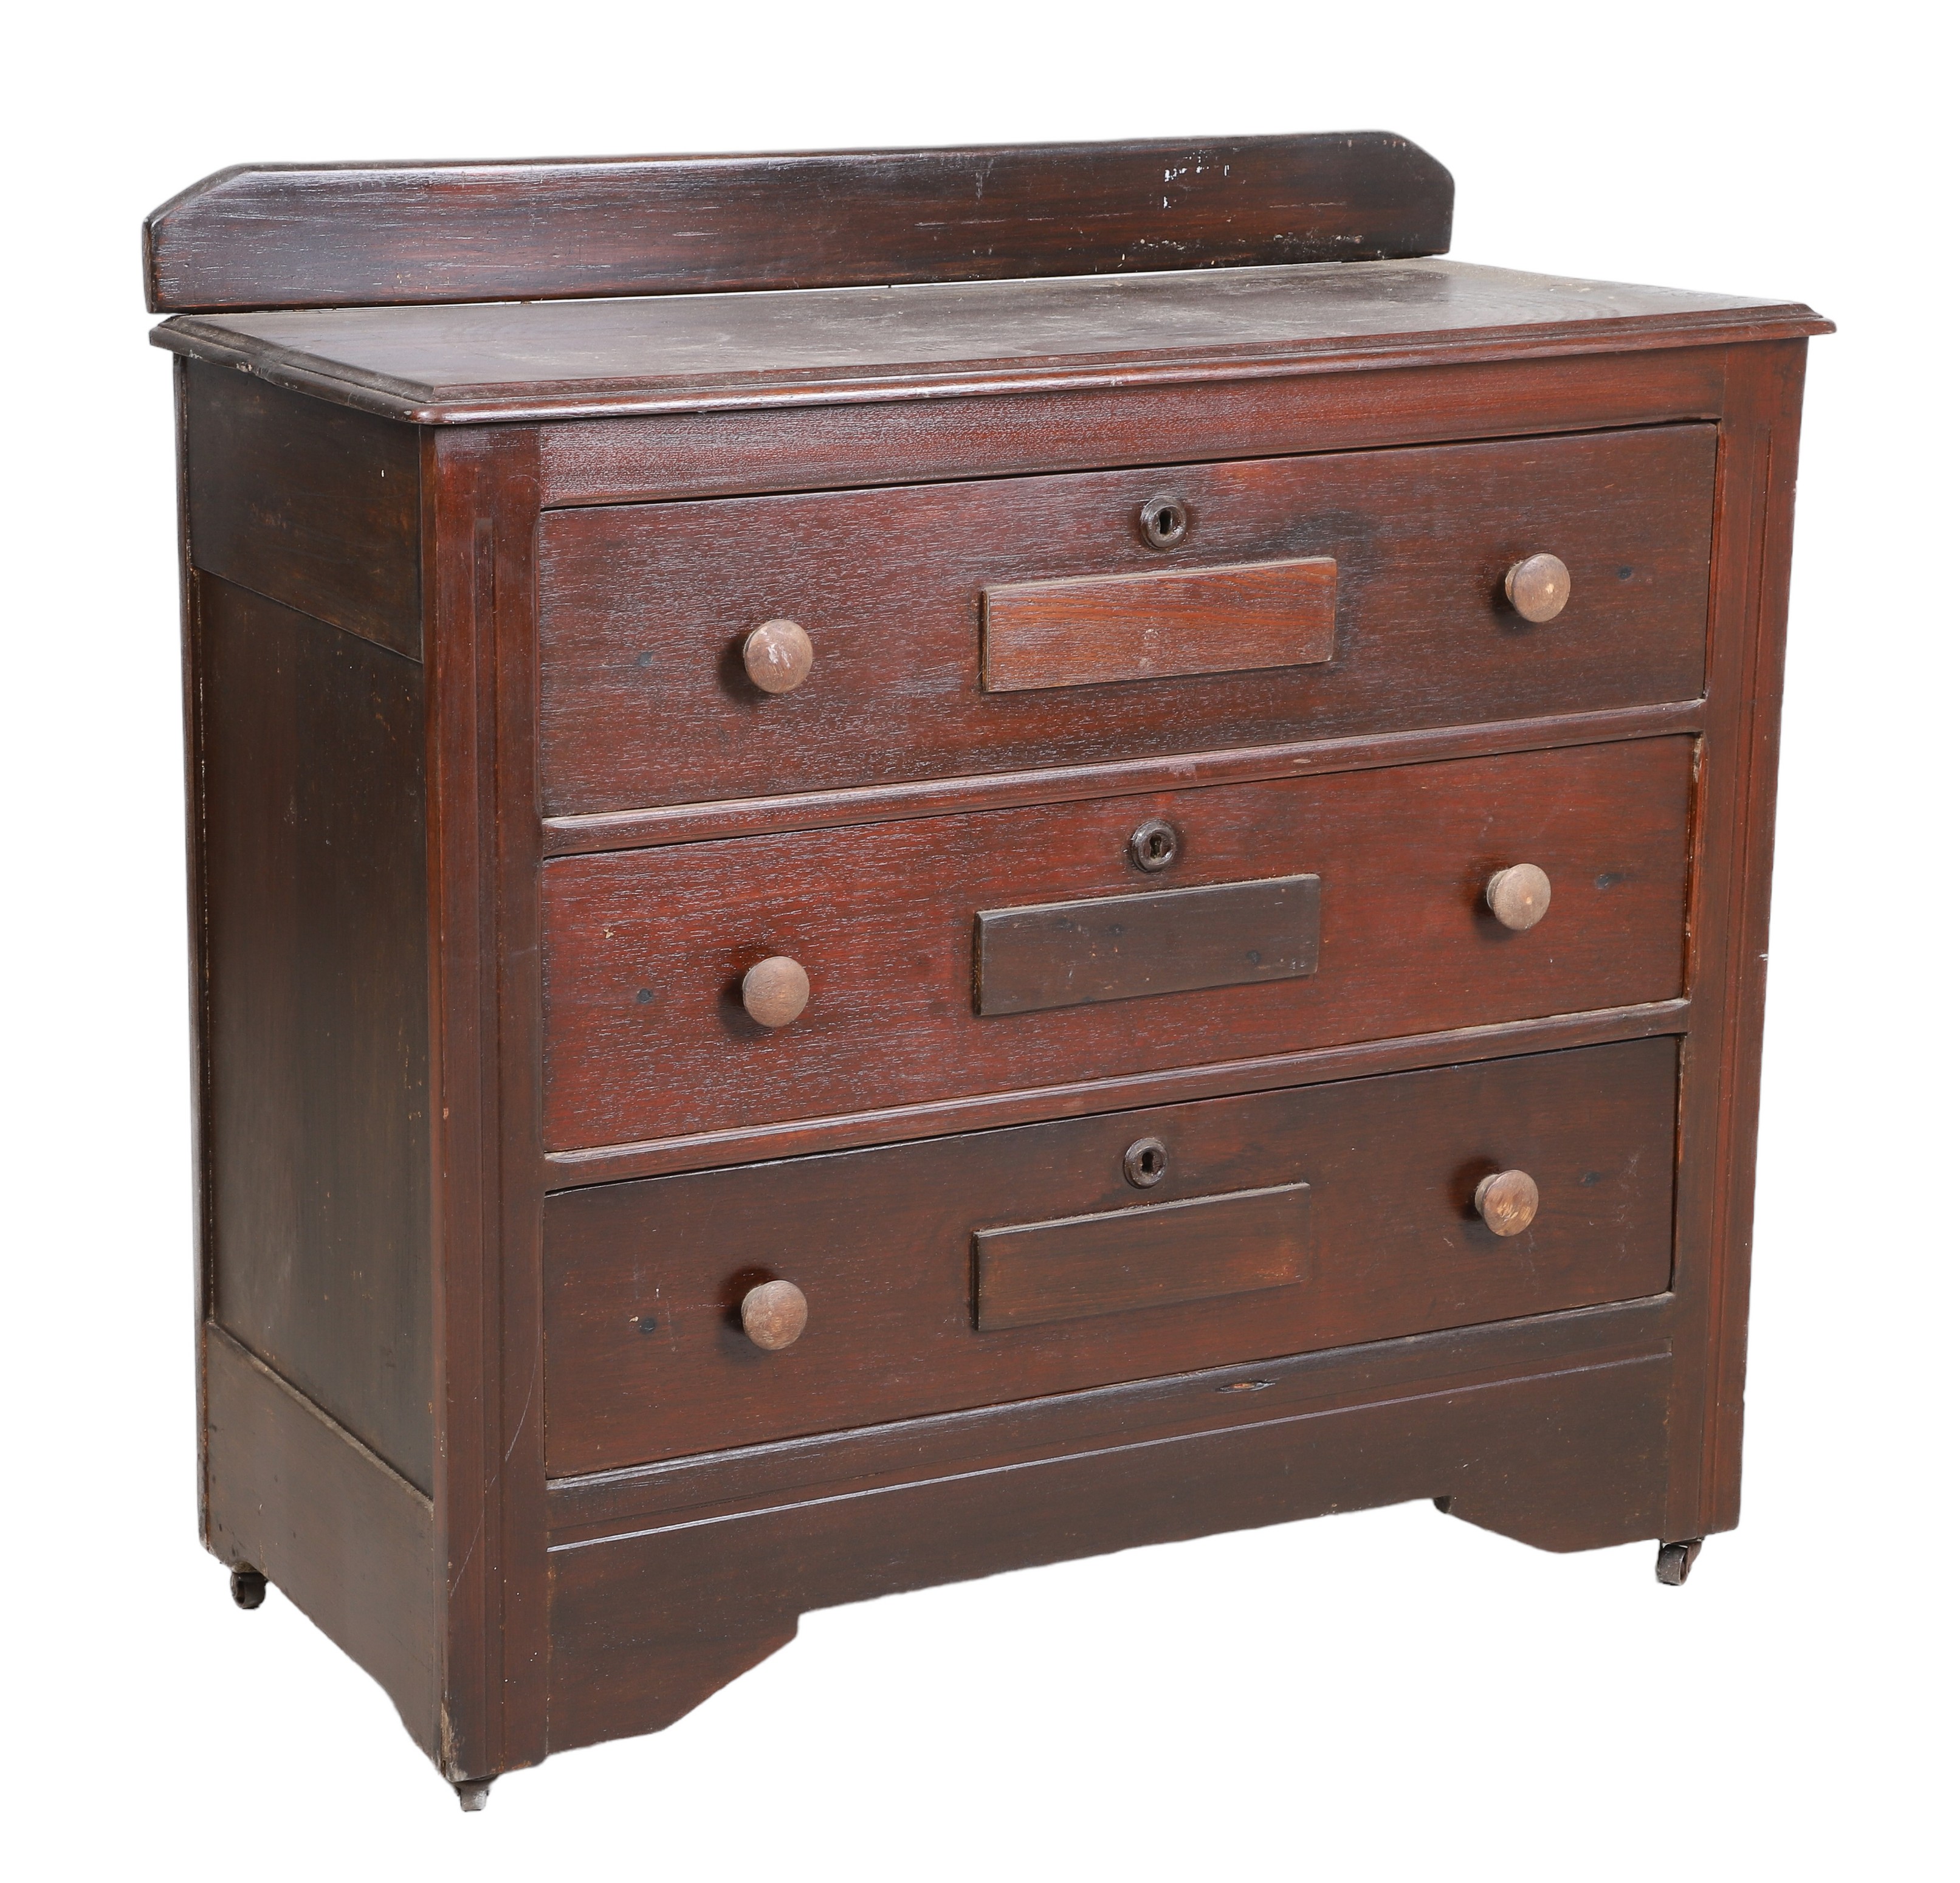 Mahogany chest of drawers, three drawers,